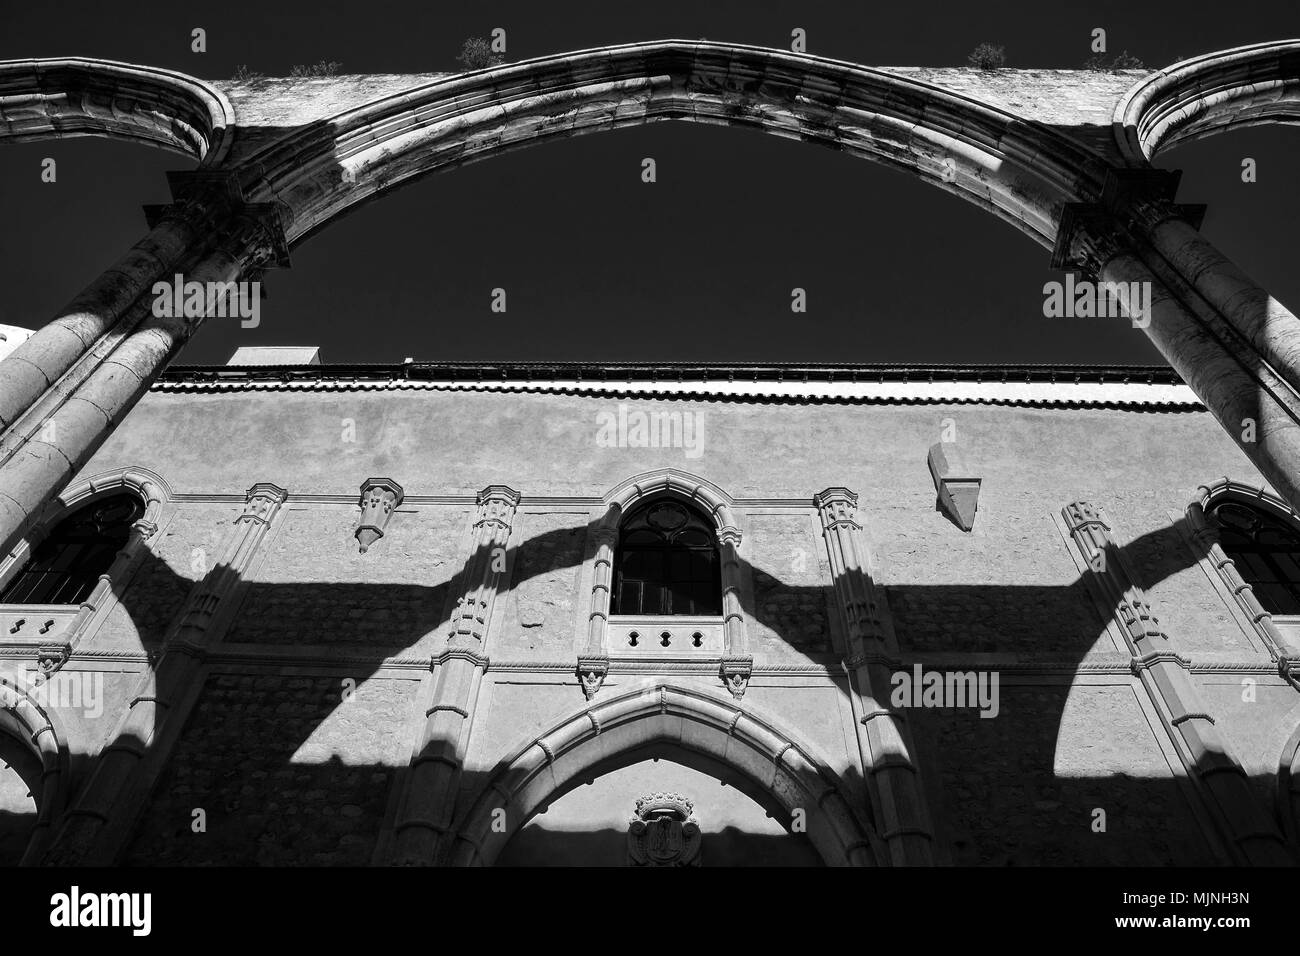 PORTUGAL - Lisbonne, 30 octobre 2018. Les ruines de l'église do Carmo, touristes incroyable attraction touristique de Lisbonne, Portugal. Banque D'Images